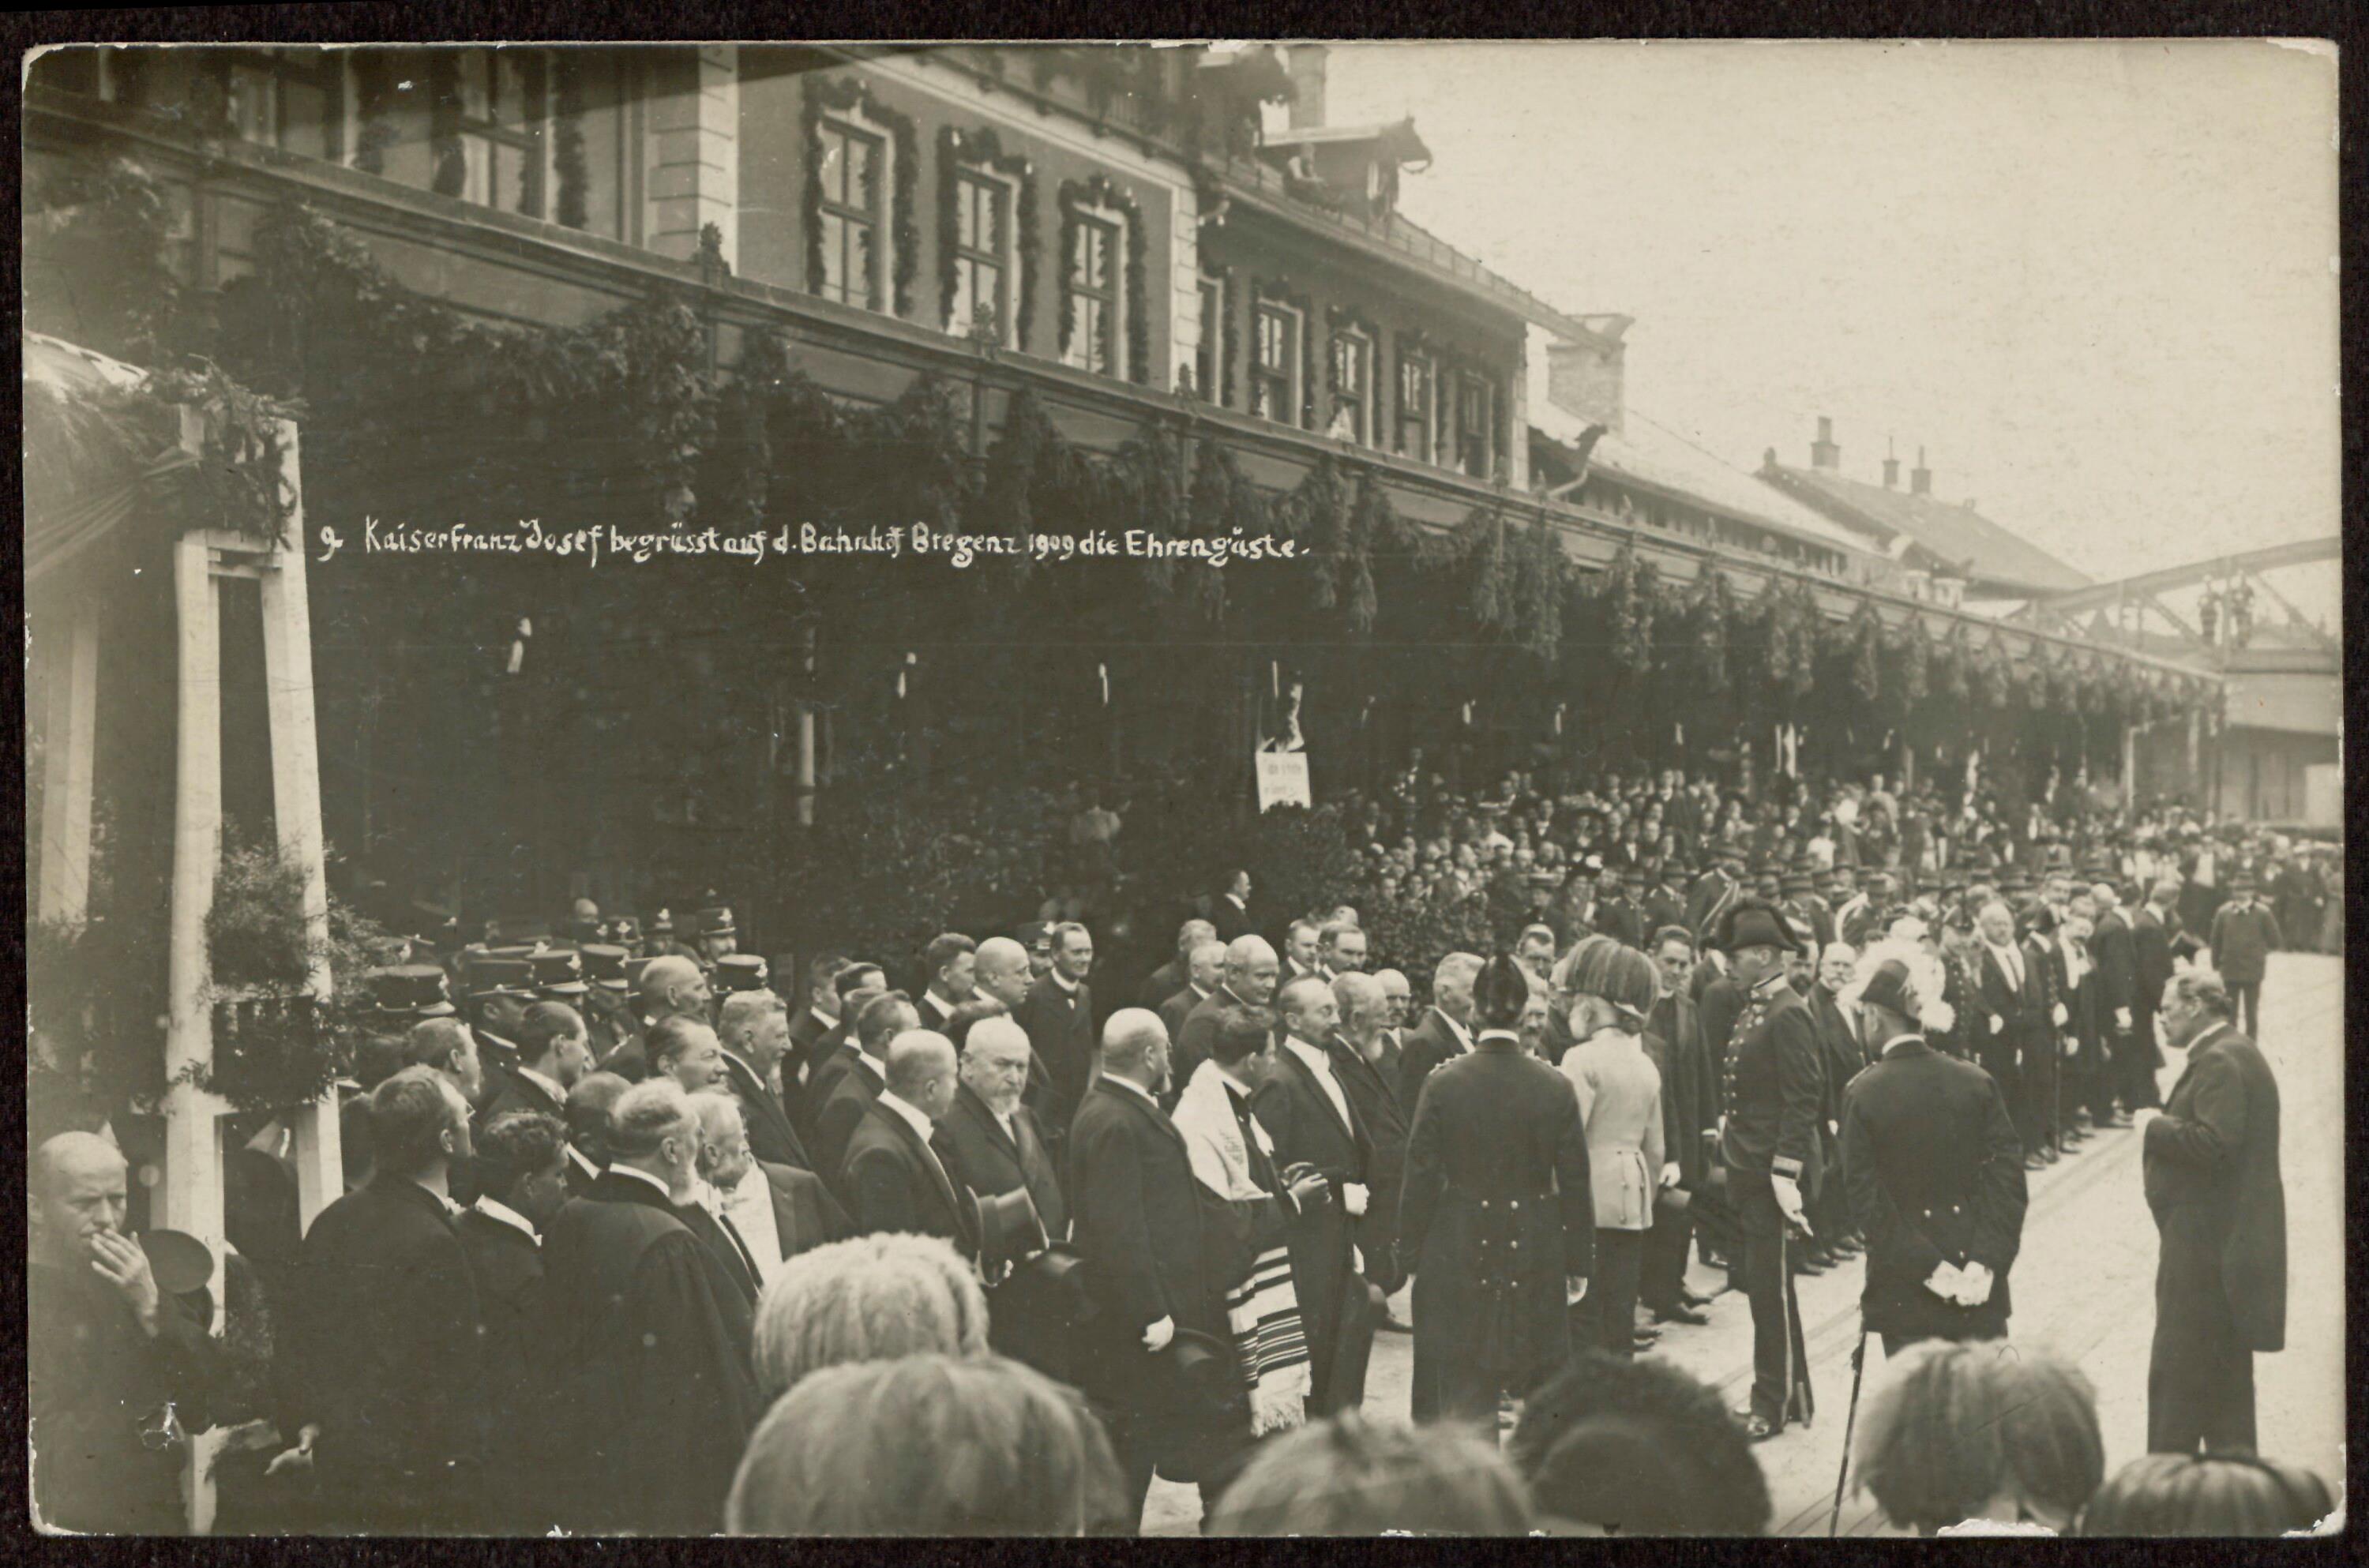 Kaiser Franz Josef I. begrüsst auf d. Bahnhof Bregenz 1909 die Ehrengäste></div>


    <hr>
    <div class=